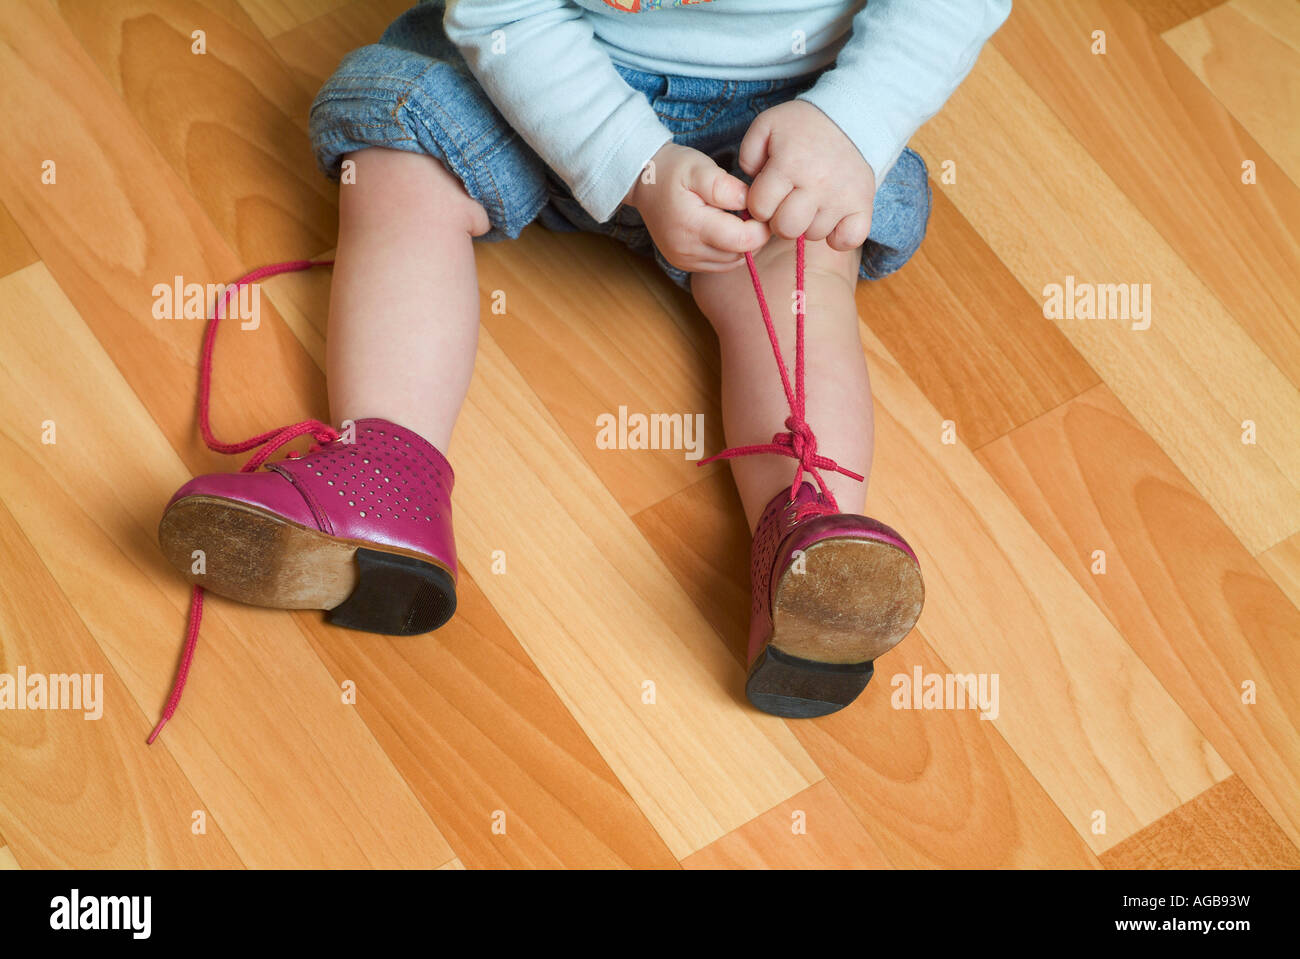 Child tying shoes Stock Photo